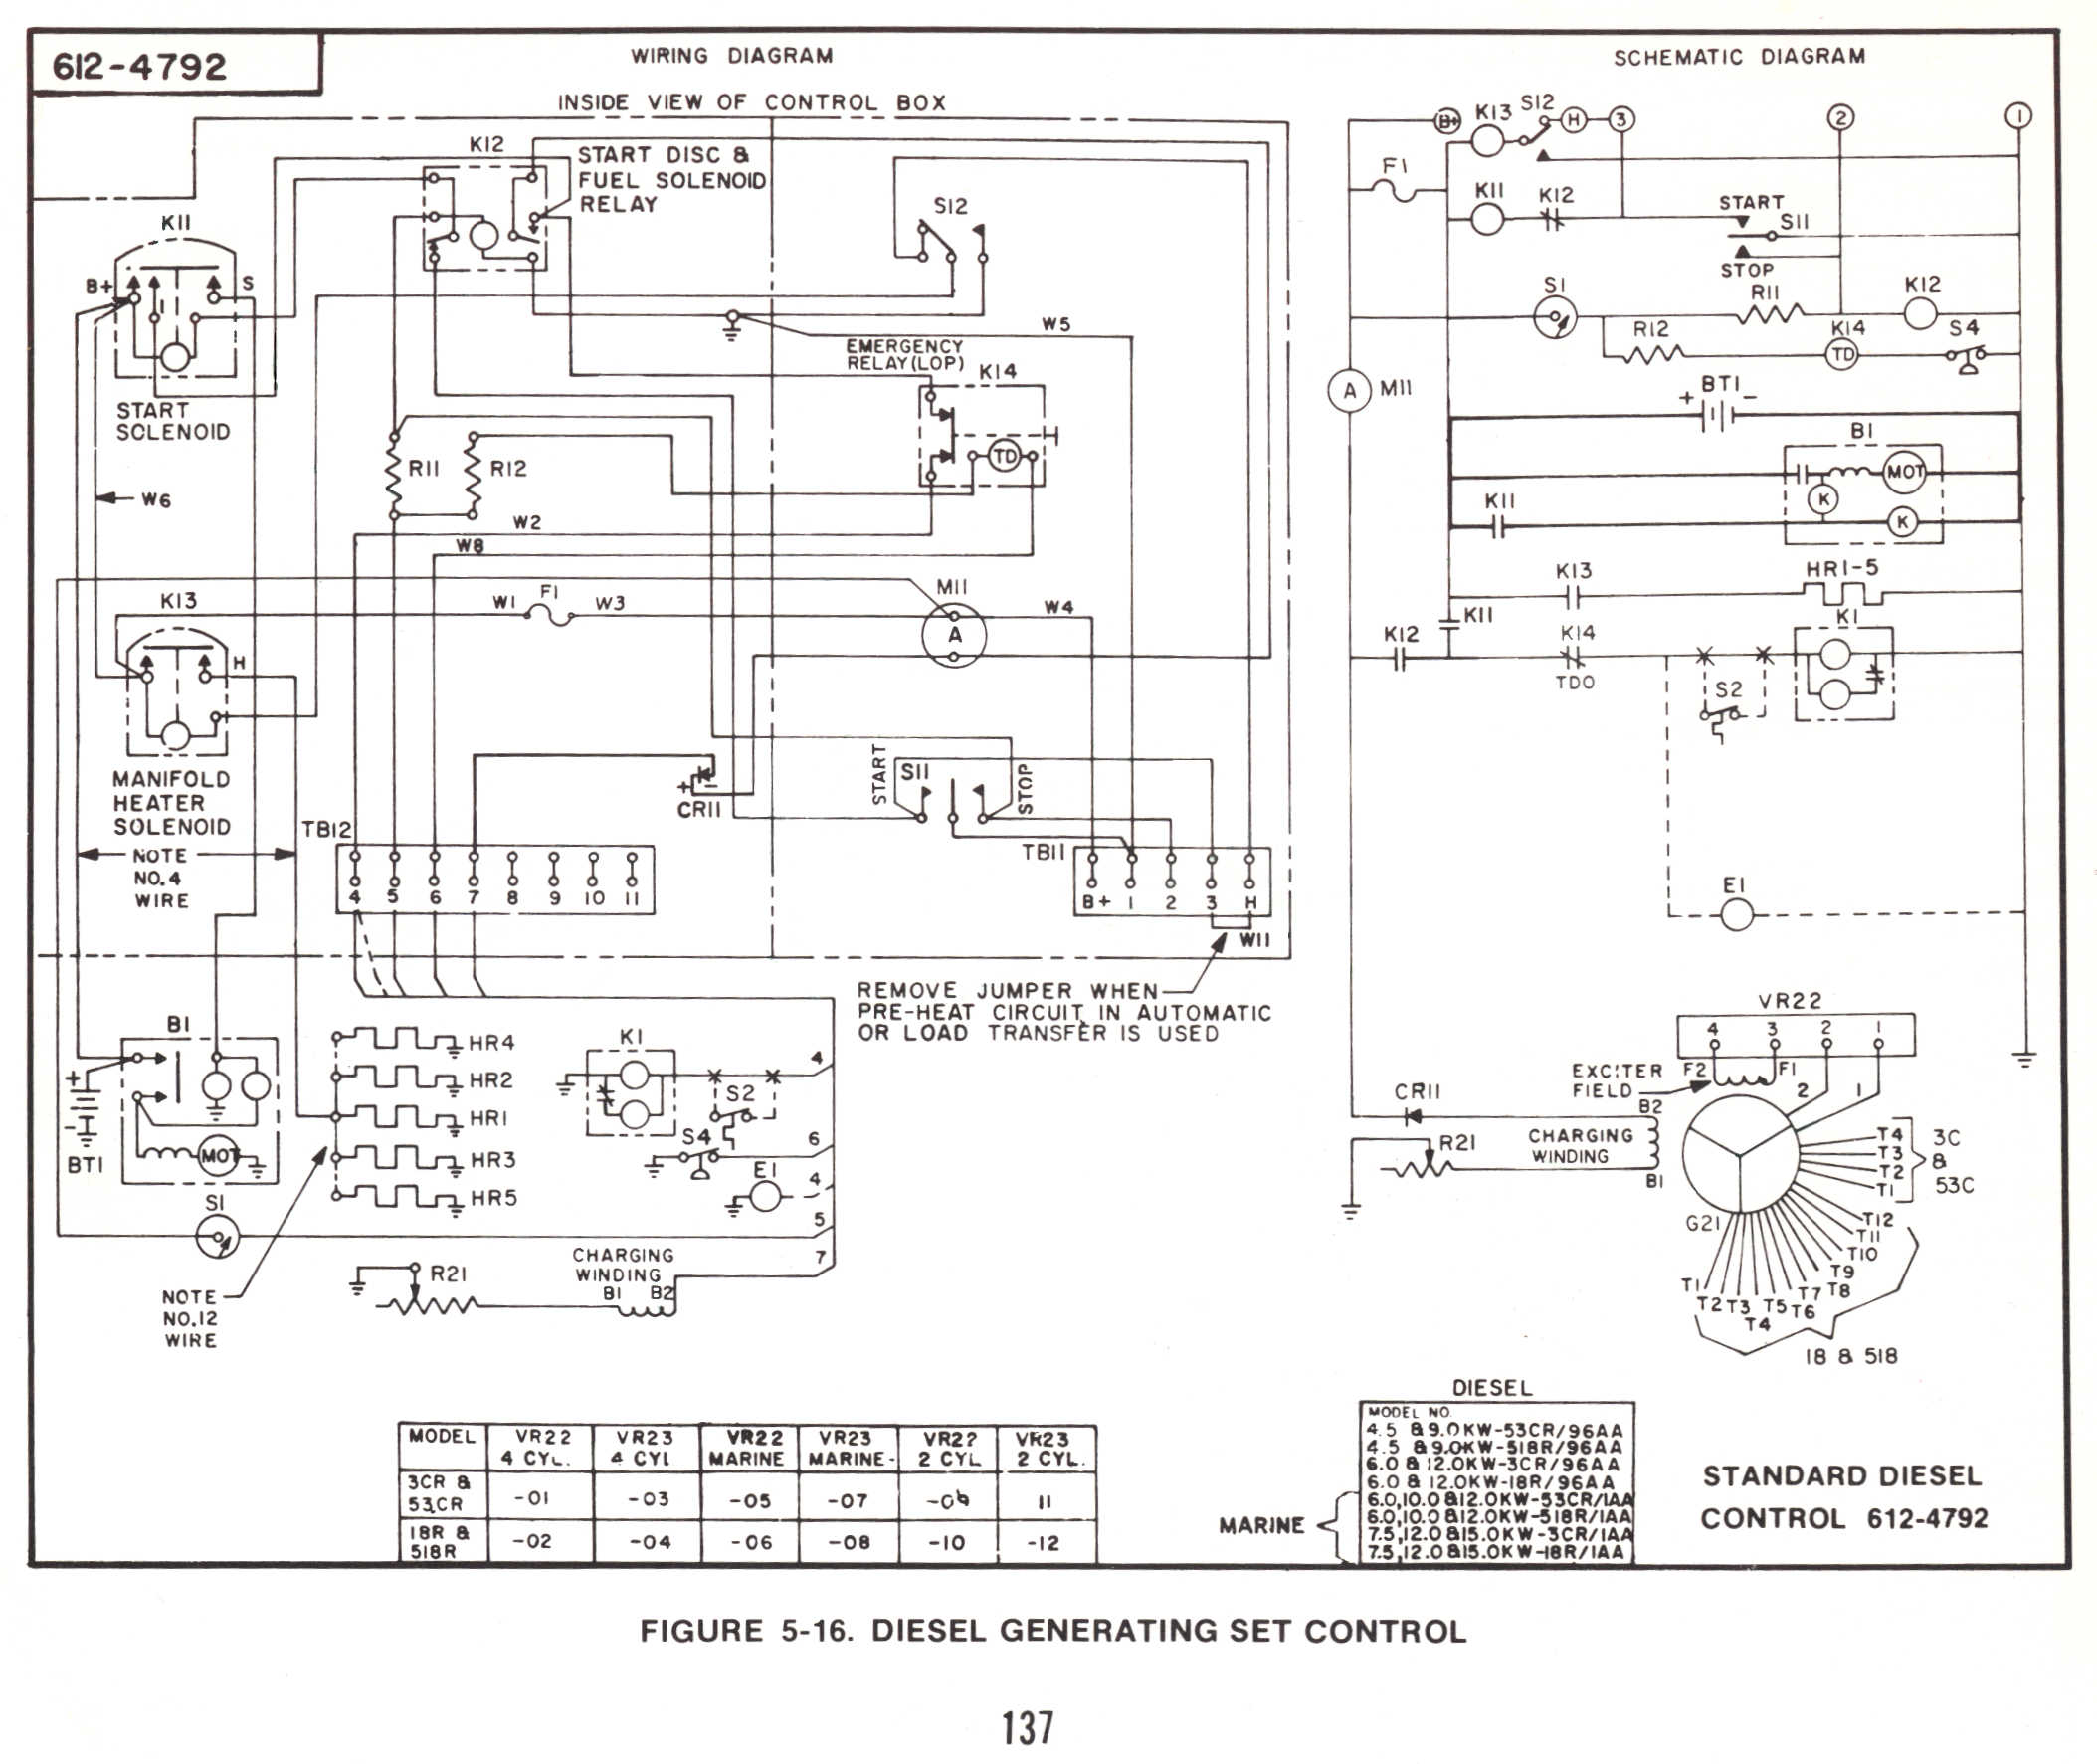 Onan 6500 Rv Generator Wiring Diagram Wiring Diagram